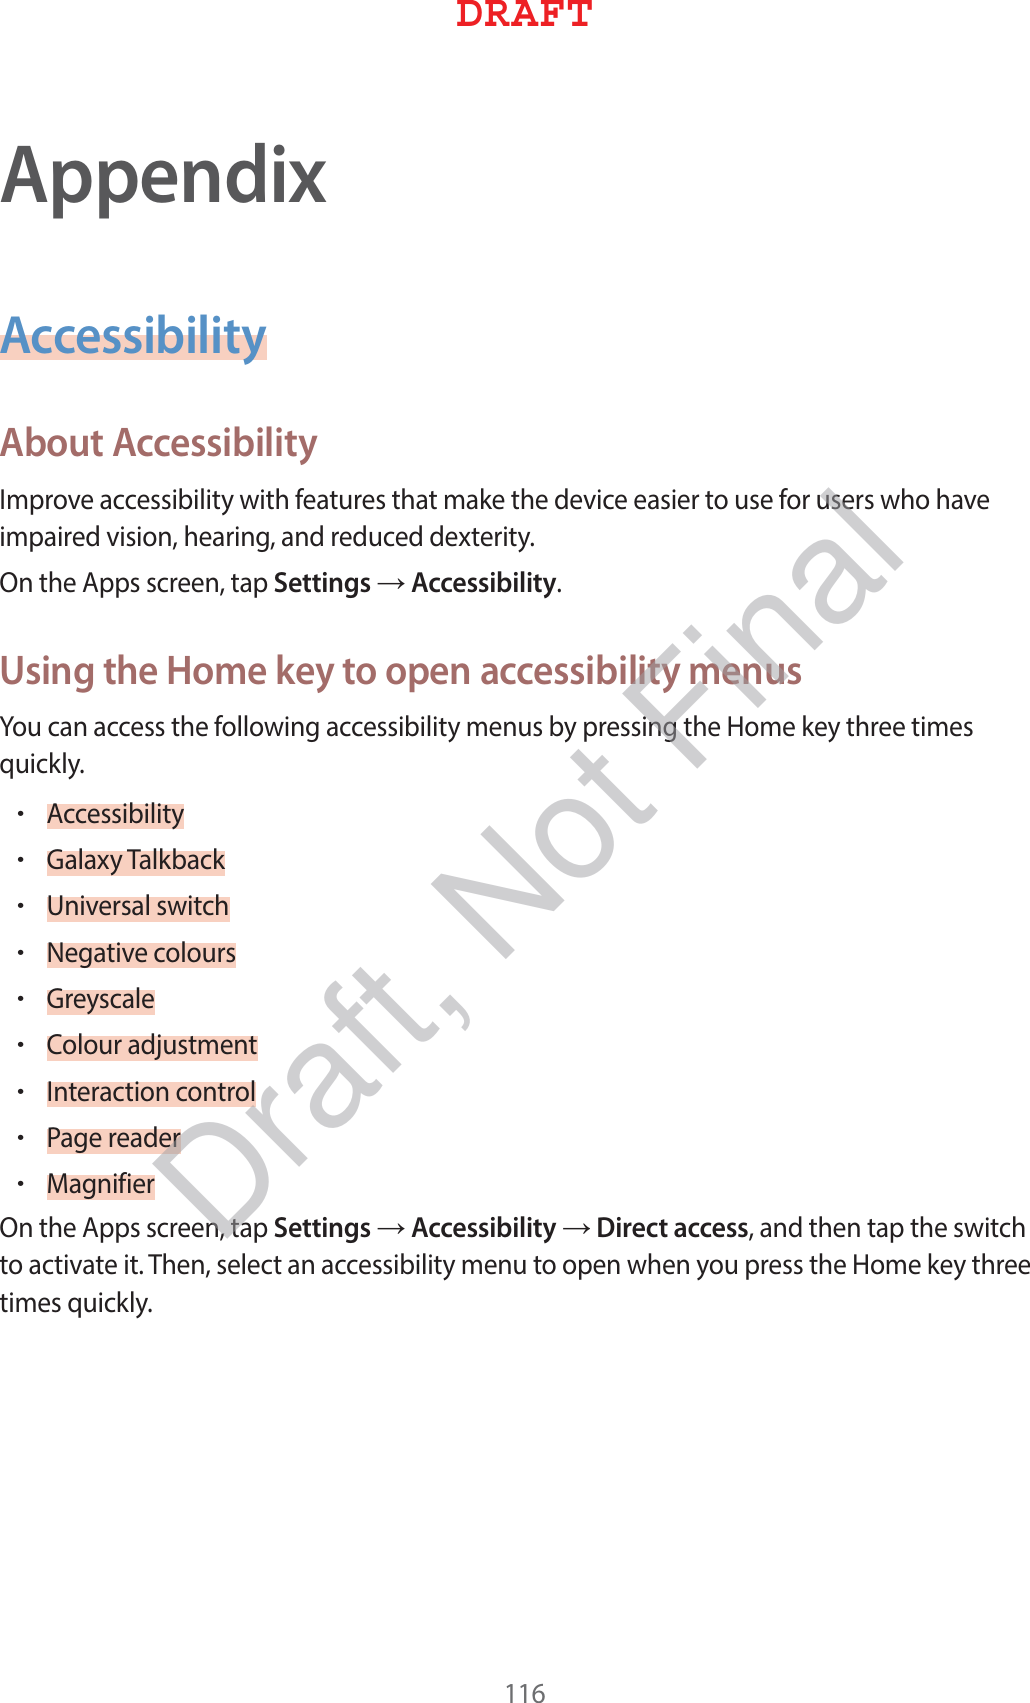 AppendixAccessibilityAbout Accessibility*NQSPWFBDDFTTJCJMJUZXJUIGFBUVSFTUIBUNBLFUIFEFWJDFFBTJFSUPVTFGPSVTFSTXIPIBWFJNQBJSFEWJTJPOIFBSJOHBOESFEVDFEEFYUFSJUZ0OUIF&quot;QQTTDSFFOUBQSettingsĺAccessibilityUsing the Home key to open accessibility menus:PVDBOBDDFTTUIFGPMMPXJOHBDDFTTJCJMJUZNFOVTCZQSFTTJOHUIF)PNFLFZUISFFUJNFTRVJDLMZr&quot;DDFTTJCJMJUZr(BMBYZ5BMLCBDLr6OJWFSTBMTXJUDIr/FHBUJWFDPMPVSTr(SFZTDBMFr$PMPVSBEKVTUNFOUr*OUFSBDUJPODPOUSPMr1BHFSFBEFSr.BHOJGJFS0OUIF&quot;QQTTDSFFOUBQSettingsĺAccessibilityĺDirect accessBOEUIFOUBQUIFTXJUDIUPBDUJWBUFJU5IFOTFMFDUBOBDDFTTJCJMJUZNFOVUPPQFOXIFOZPVQSFTTUIF)PNFLFZUISFFUJNFTRVJDLMZ%3&quot;&apos;5Draft, Not Final